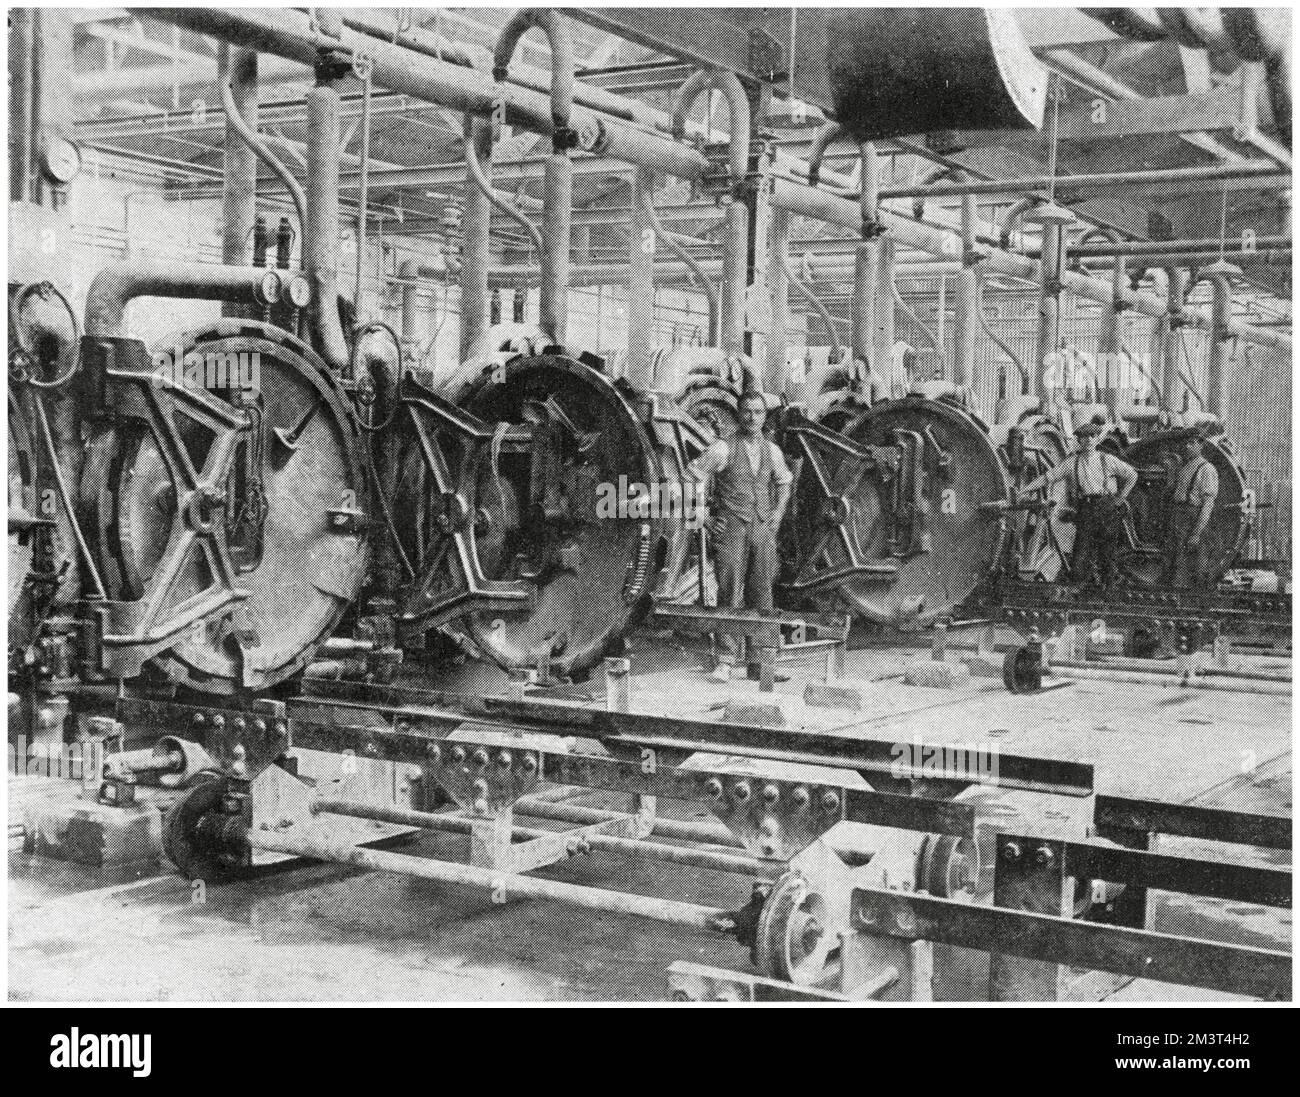 Die ursprüngliche Reifenfabrik für Dunlop Tyres in Fort Dunlop im Erdington-Bezirk Birmingham. Eine Reihe von Vulkanisierwannen, sie wurden zum Aushärten von Bademänteln auf gebogenen Dornen verwendet. Stockfoto